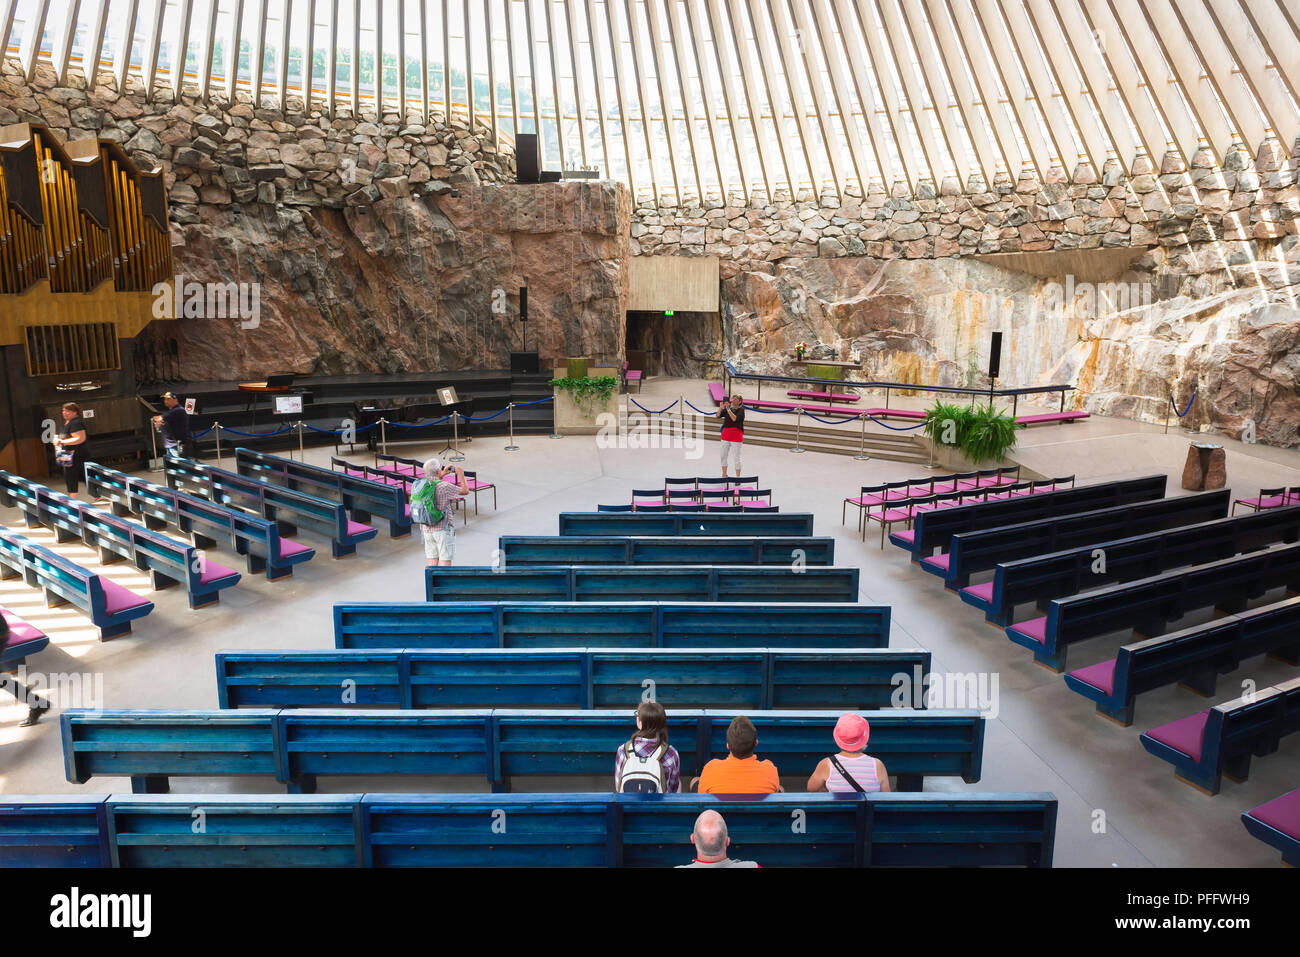 L'église Temppeliaukio, Temppeliaukion Kirkko vue à l'intérieur de l'église de Roche 'ou', dans le centre d'Helsinki montrant les touristes assis sur son banc bleu, en Finlande. Banque D'Images